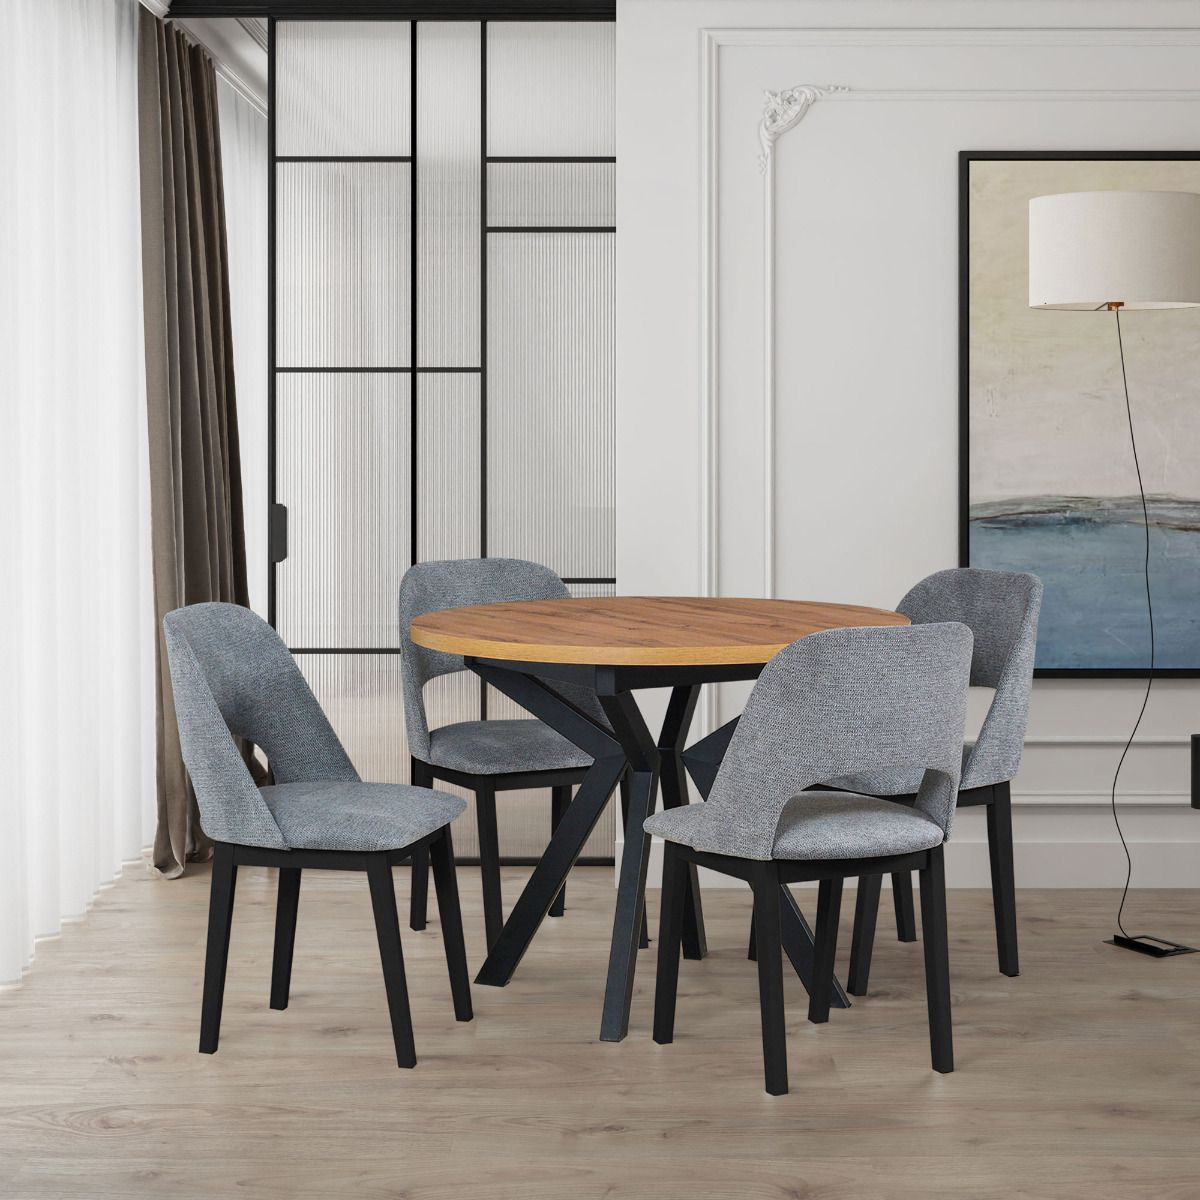 Esszimmer Komplett - Set Q, 5 - teilig, runder Holztisch in Schwarz/Eiche, Tischbeine aus Metall, Oberfläche furniert, 4 Polstersessel in Grau